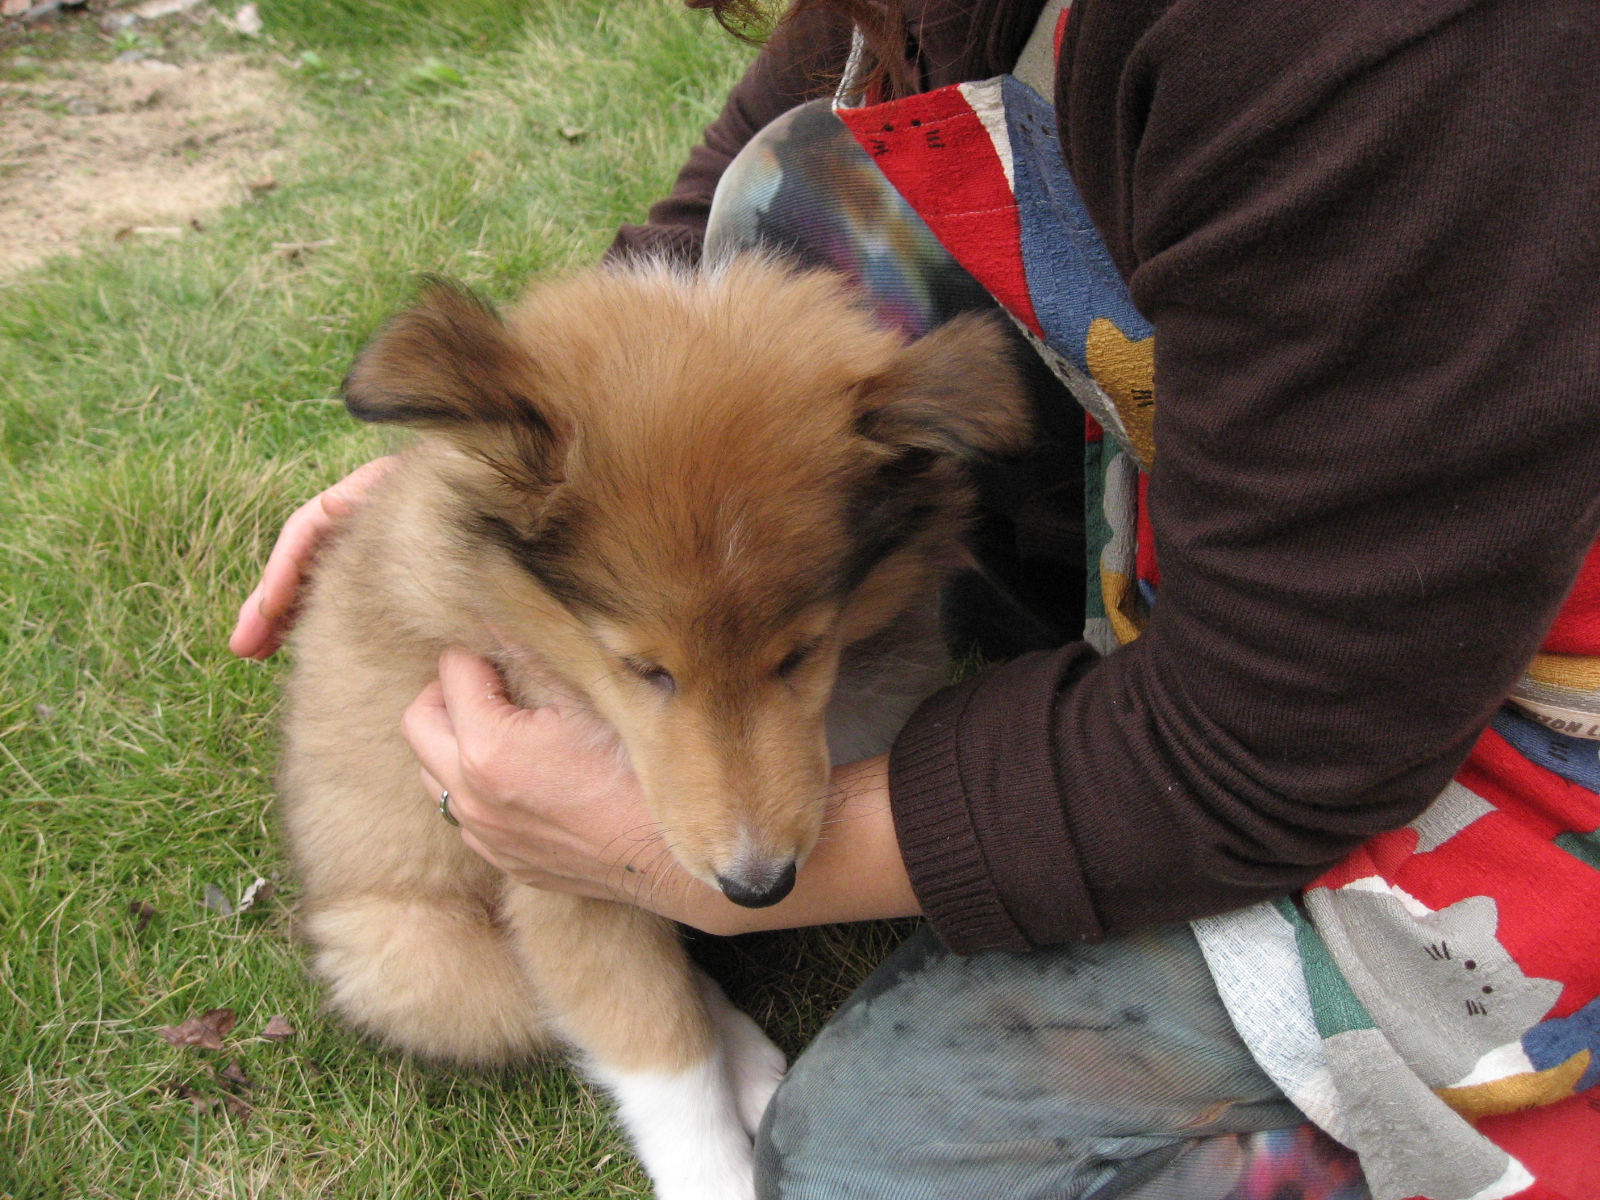 http://www.lucky-dog.jp/weblog/image/IMG_2433.JPG